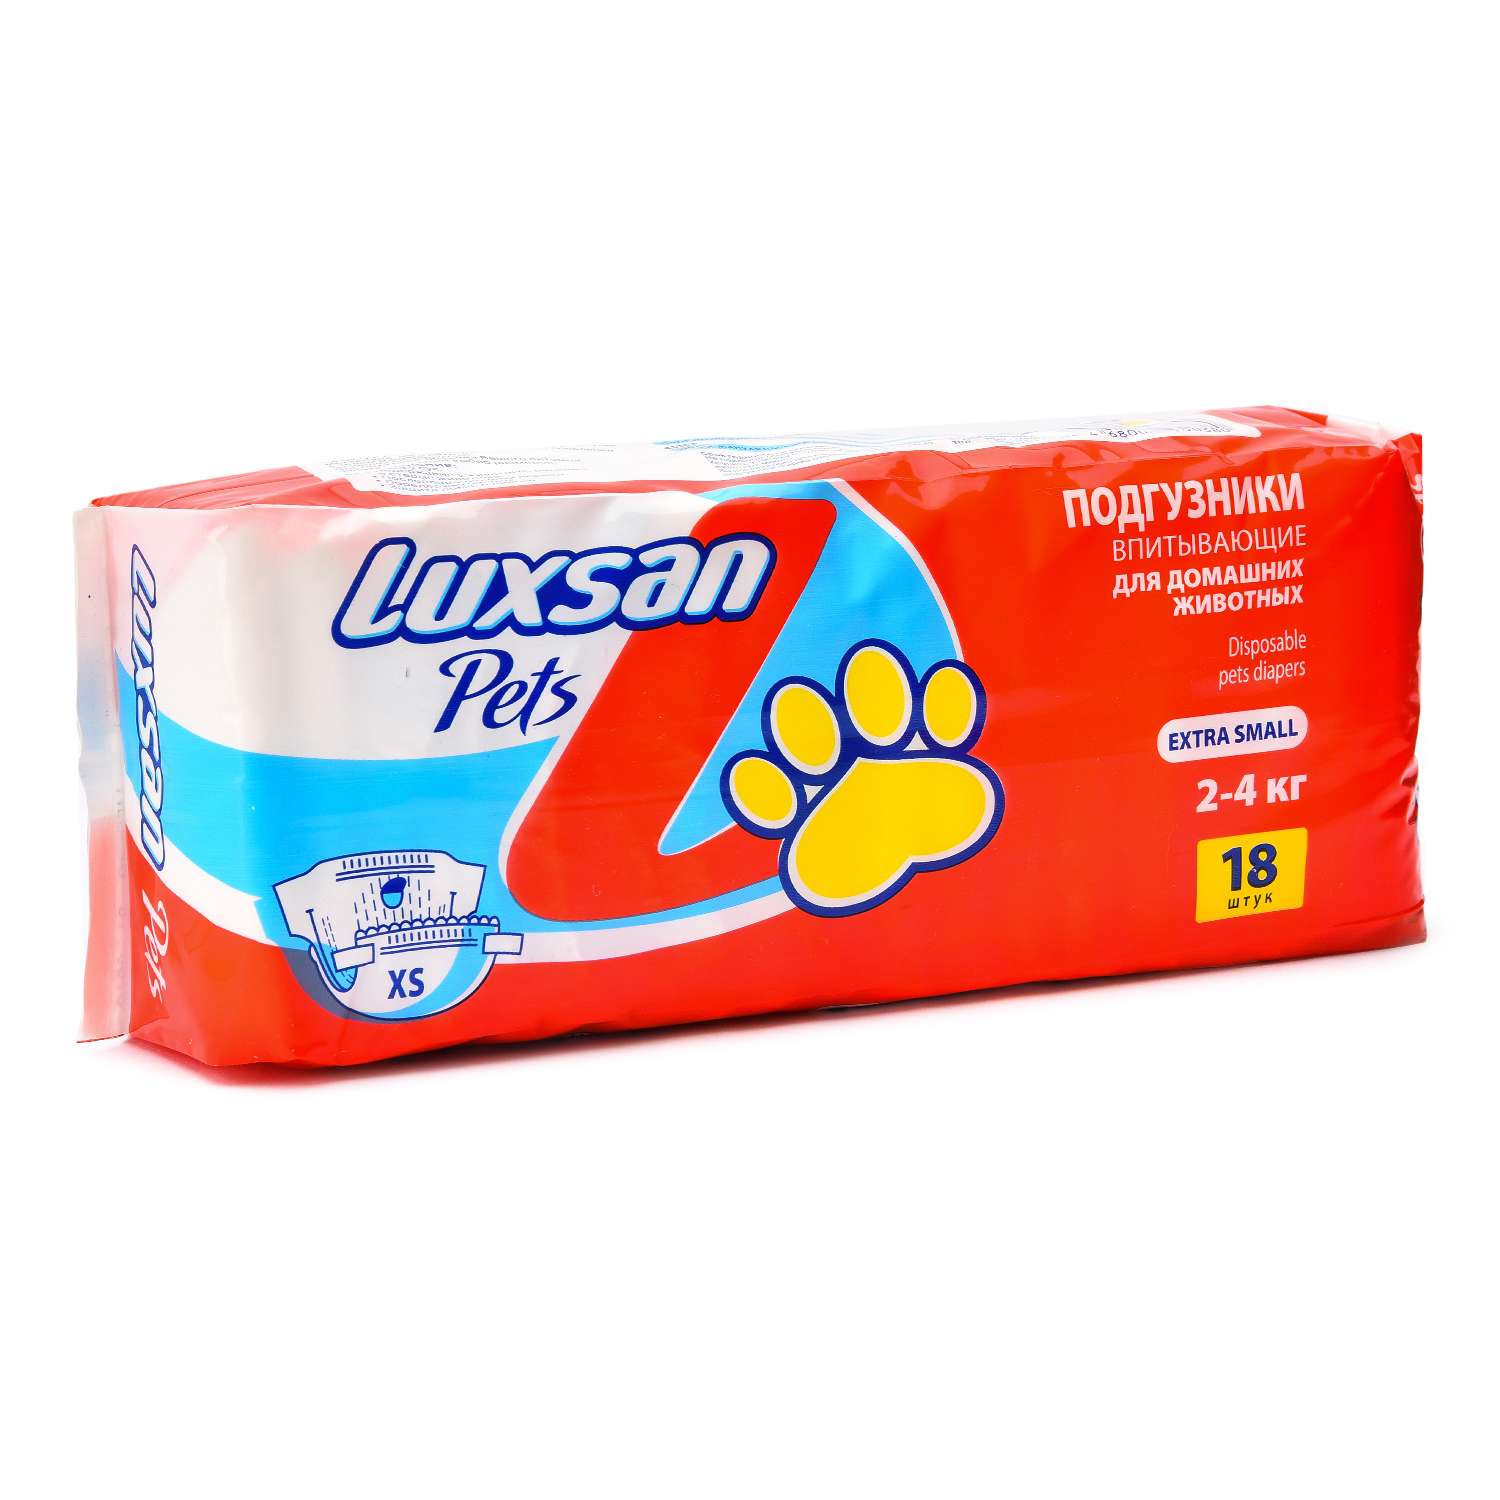 Подгузники для животных Luxsan Pets впитывающие XS 2-4кг 18шт - фото 2